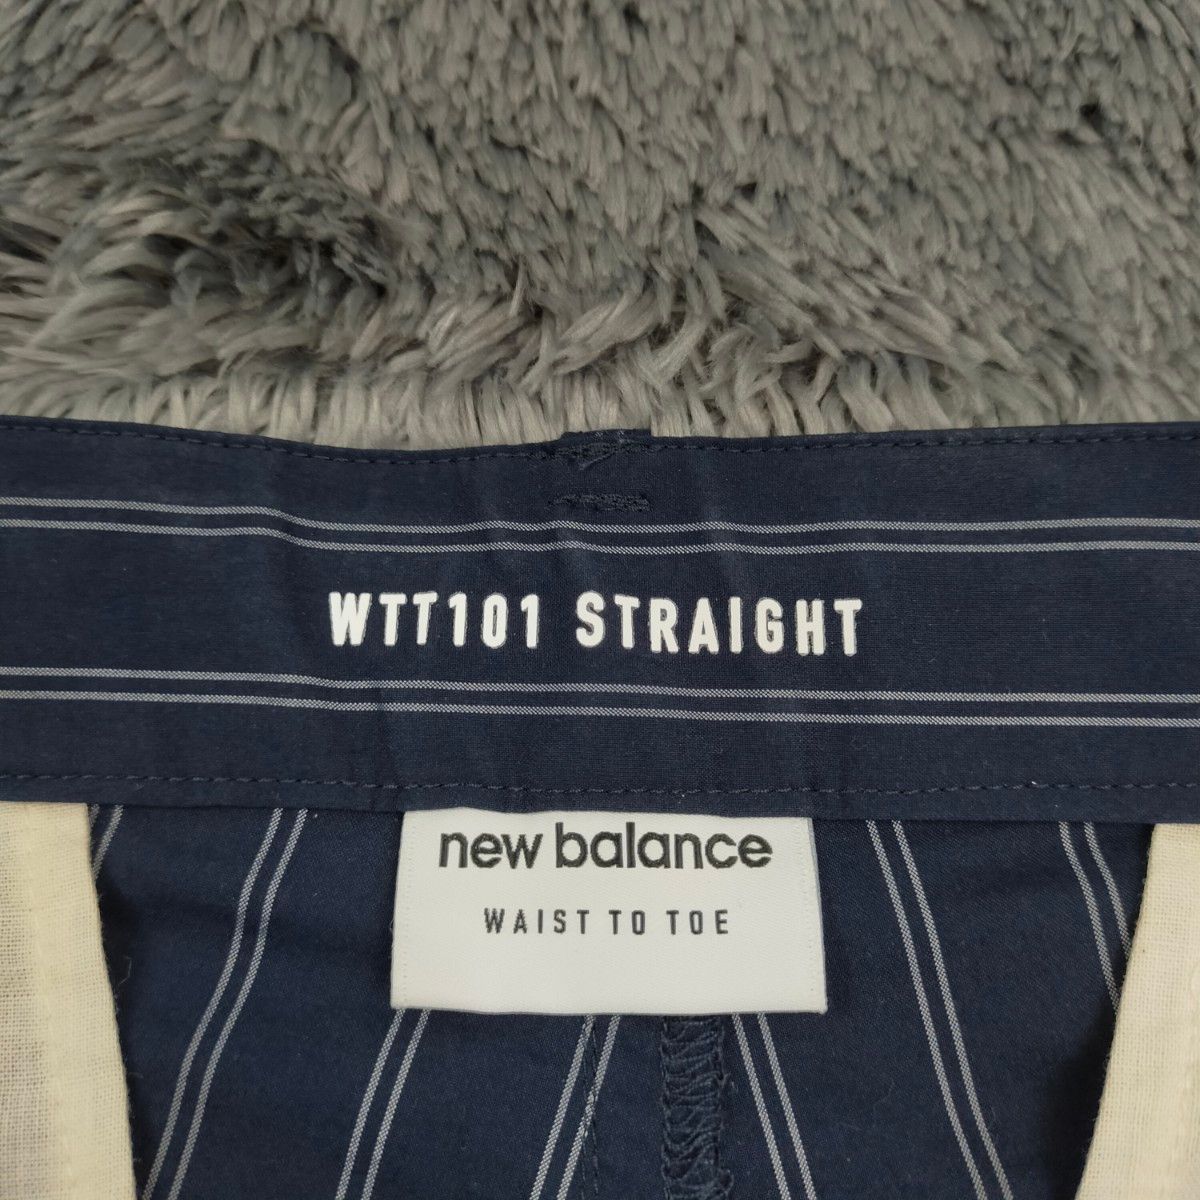 NEW BALANCE ニューバランス waist to toe ストレッチパンツ スラックス 紺色 ストライプ メンズ M